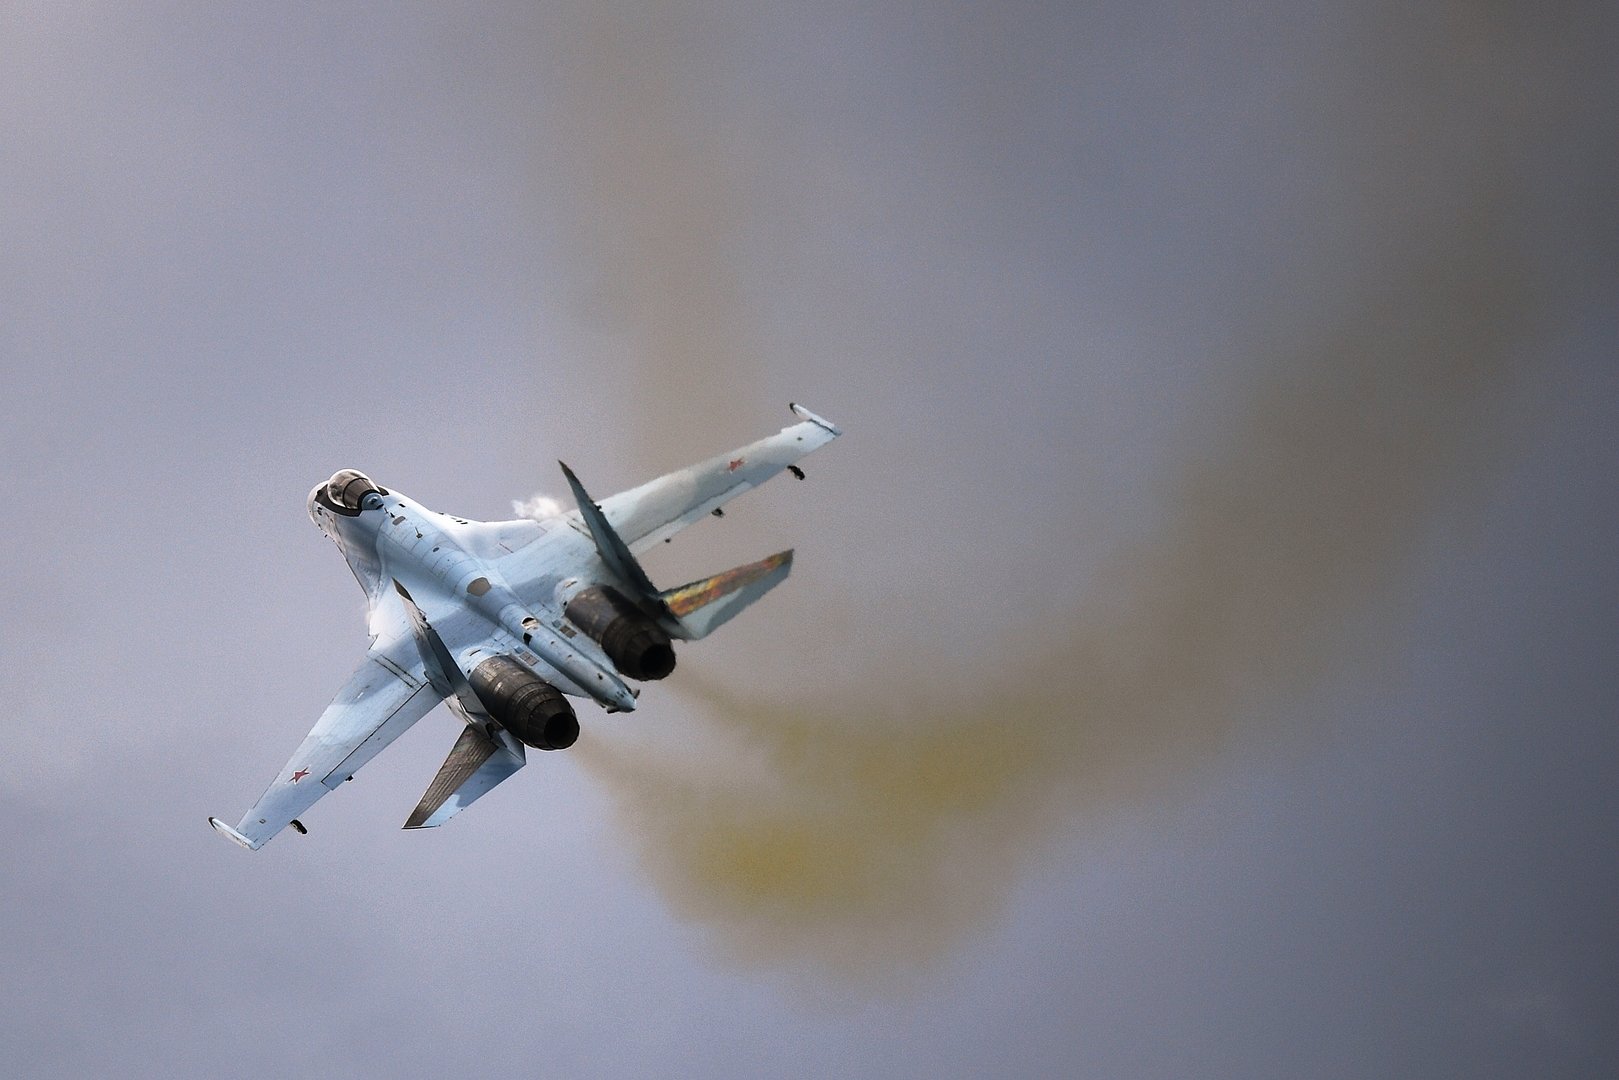 موسكو تصف تهديد واشنطن بفرض عقوبات على القاهرة إذا اشترت طائرة سو-35 بالسلوك العدواني